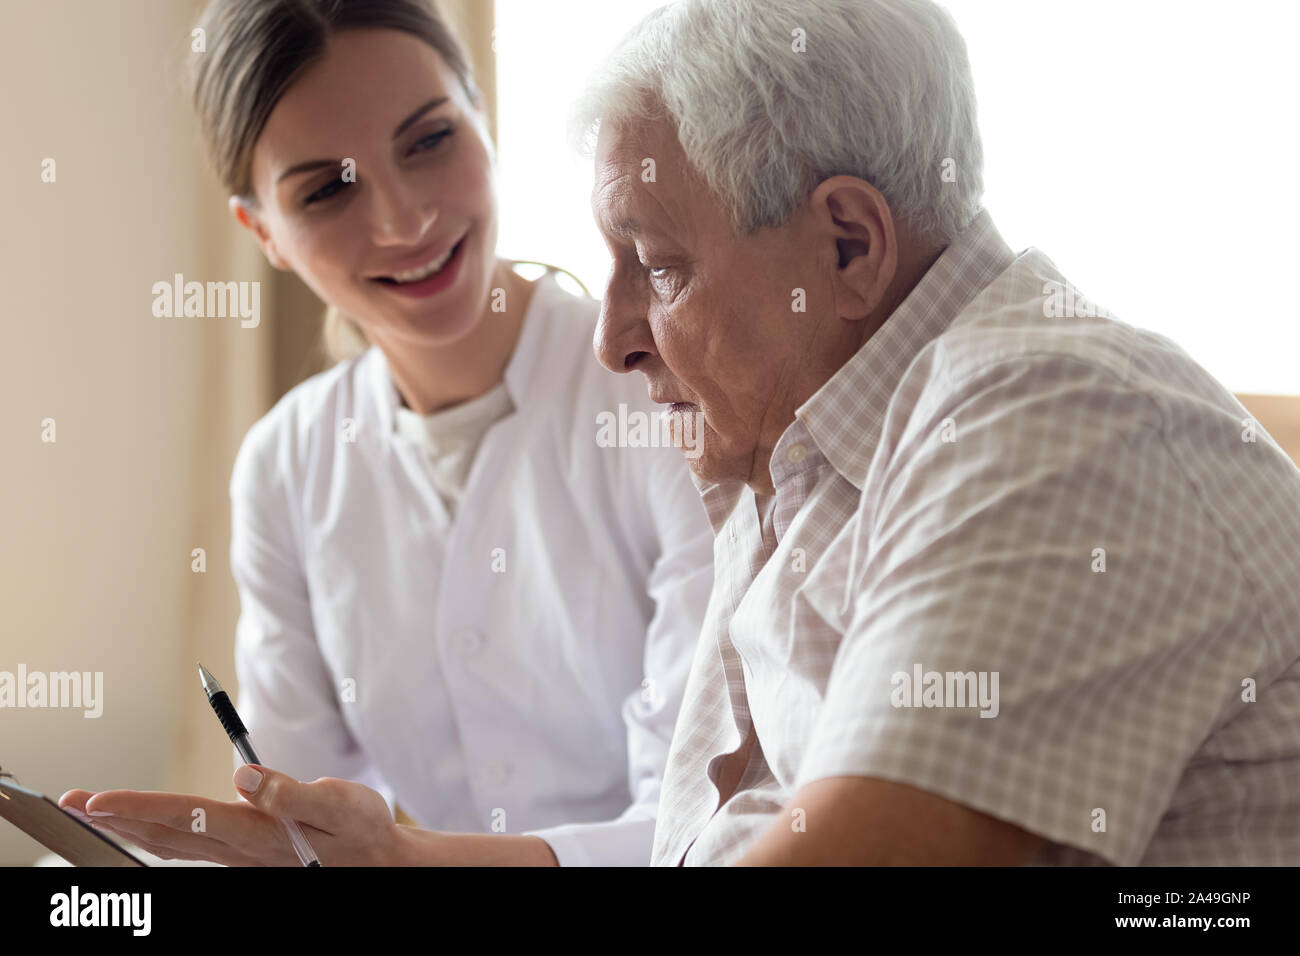 Uomo vecchio paziente e giovane infermiere parlando in ambienti interni Foto Stock